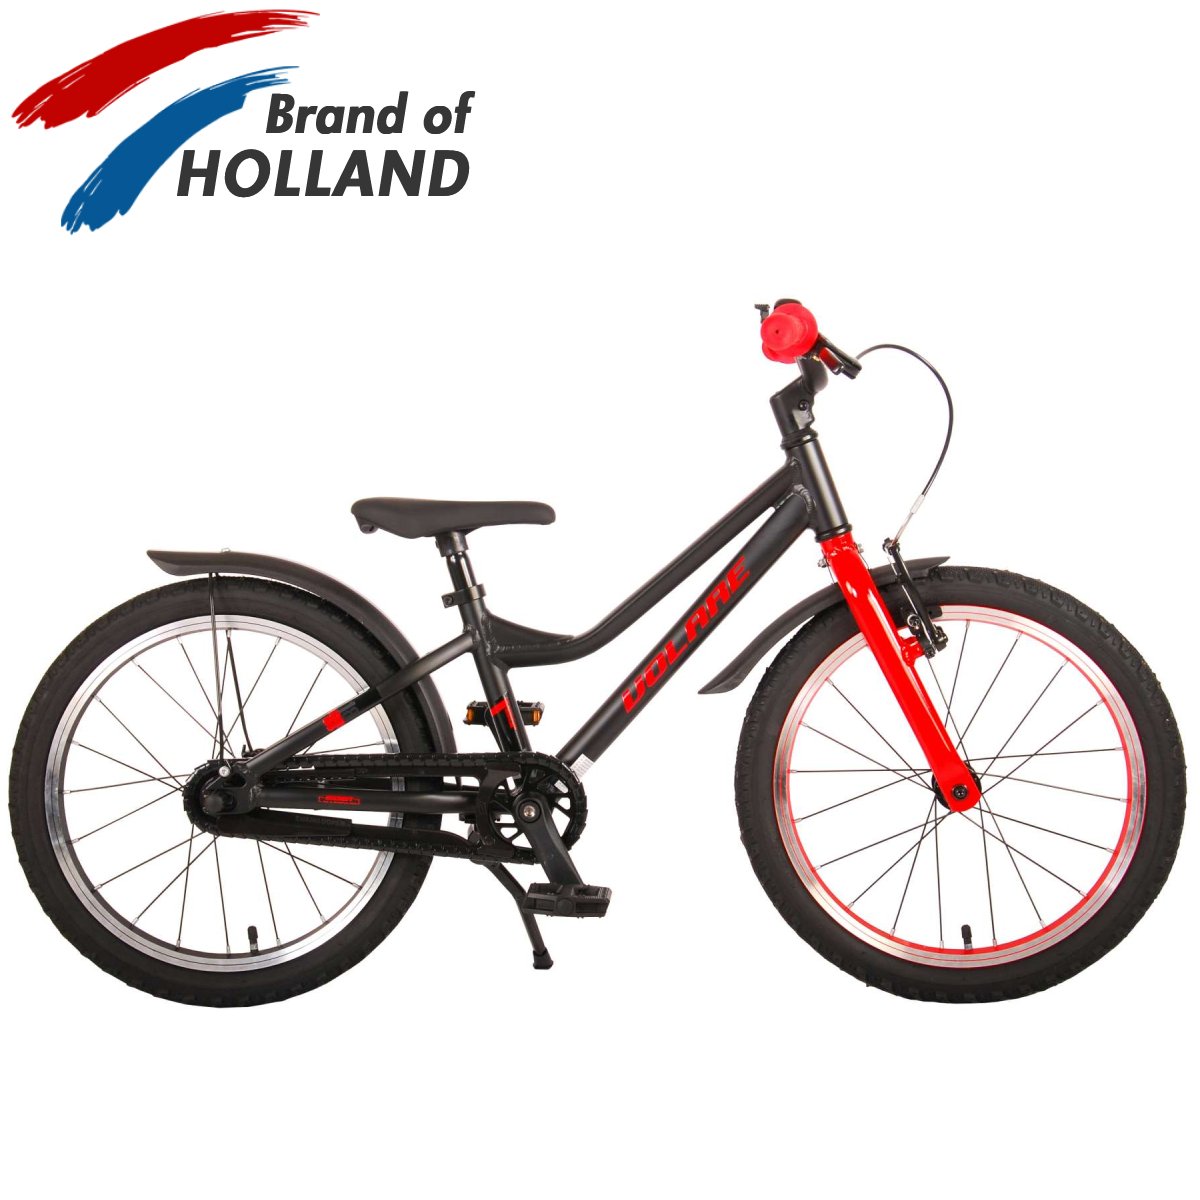 Vaikiškas dviratis VOLARE 18" Blaster (21870) juodas/raudonas